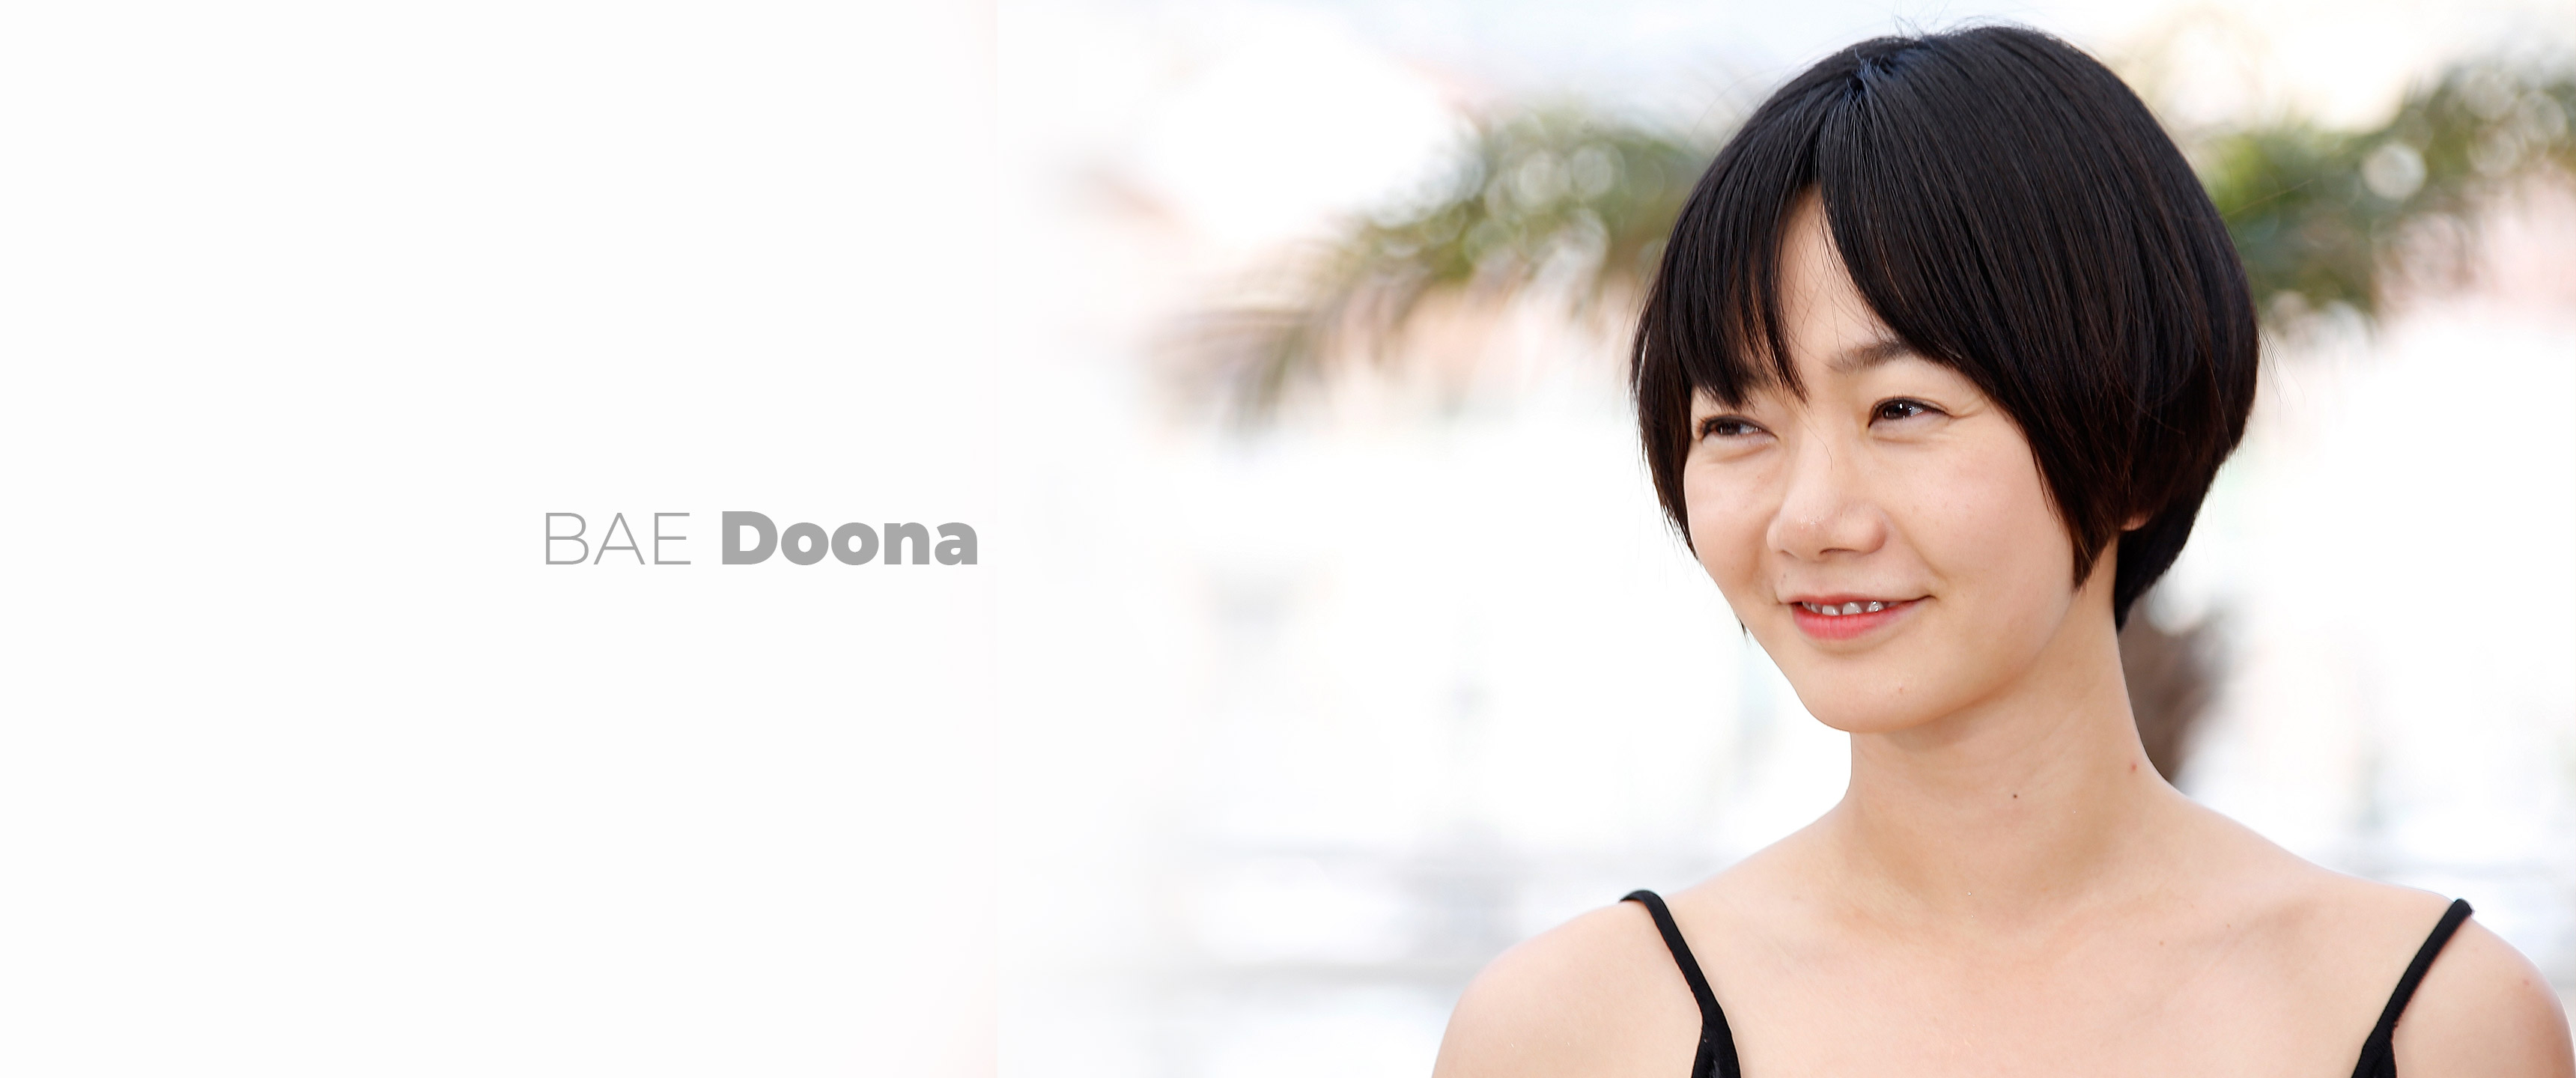 Doona Bae Sense 8 South Korea Korean Actress Celebrity Short Hair Women 3440x1440